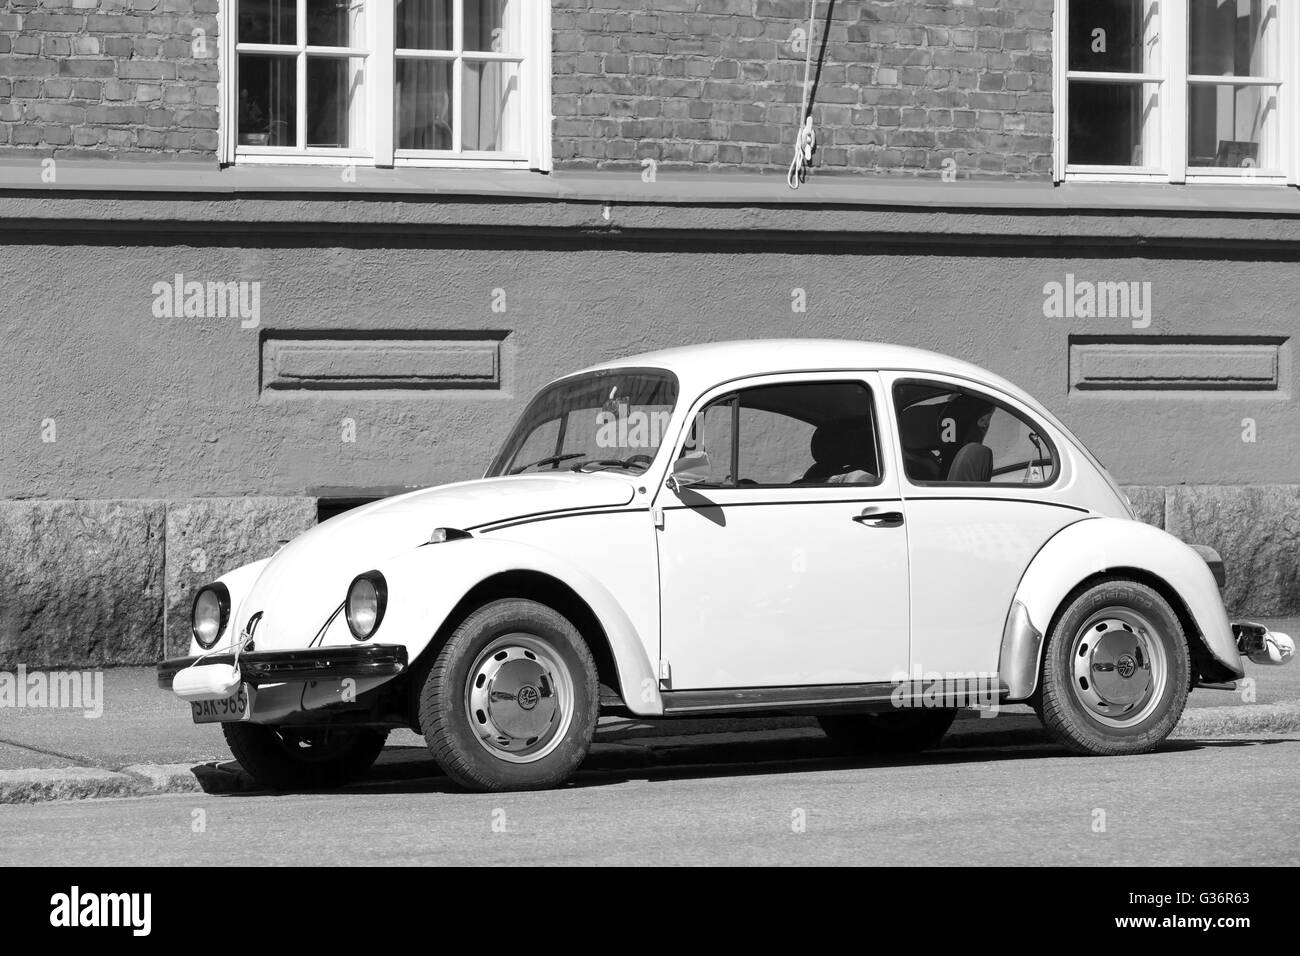 Helsinki, Finlandia - 7 Maggio 2016: il vecchio giallo Volkswagen Beetle è parcheggiato su una strada, in bianco e nero Foto Stock